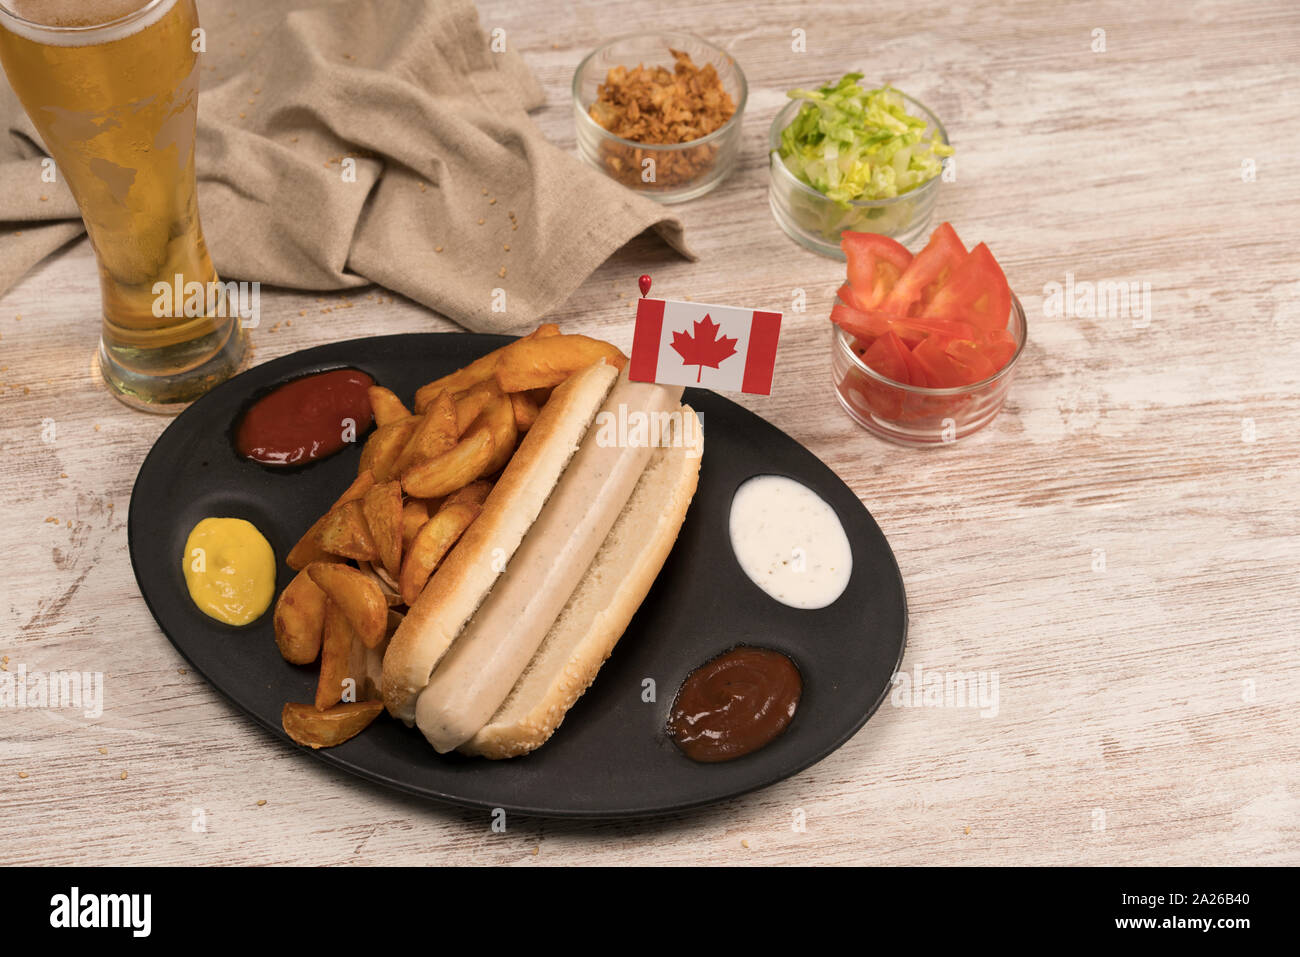 Perro caliente casero con salchichas blancas en bandeja con diversos condimentos y la bandera Canadiense vistos desde arriba Foto de stock